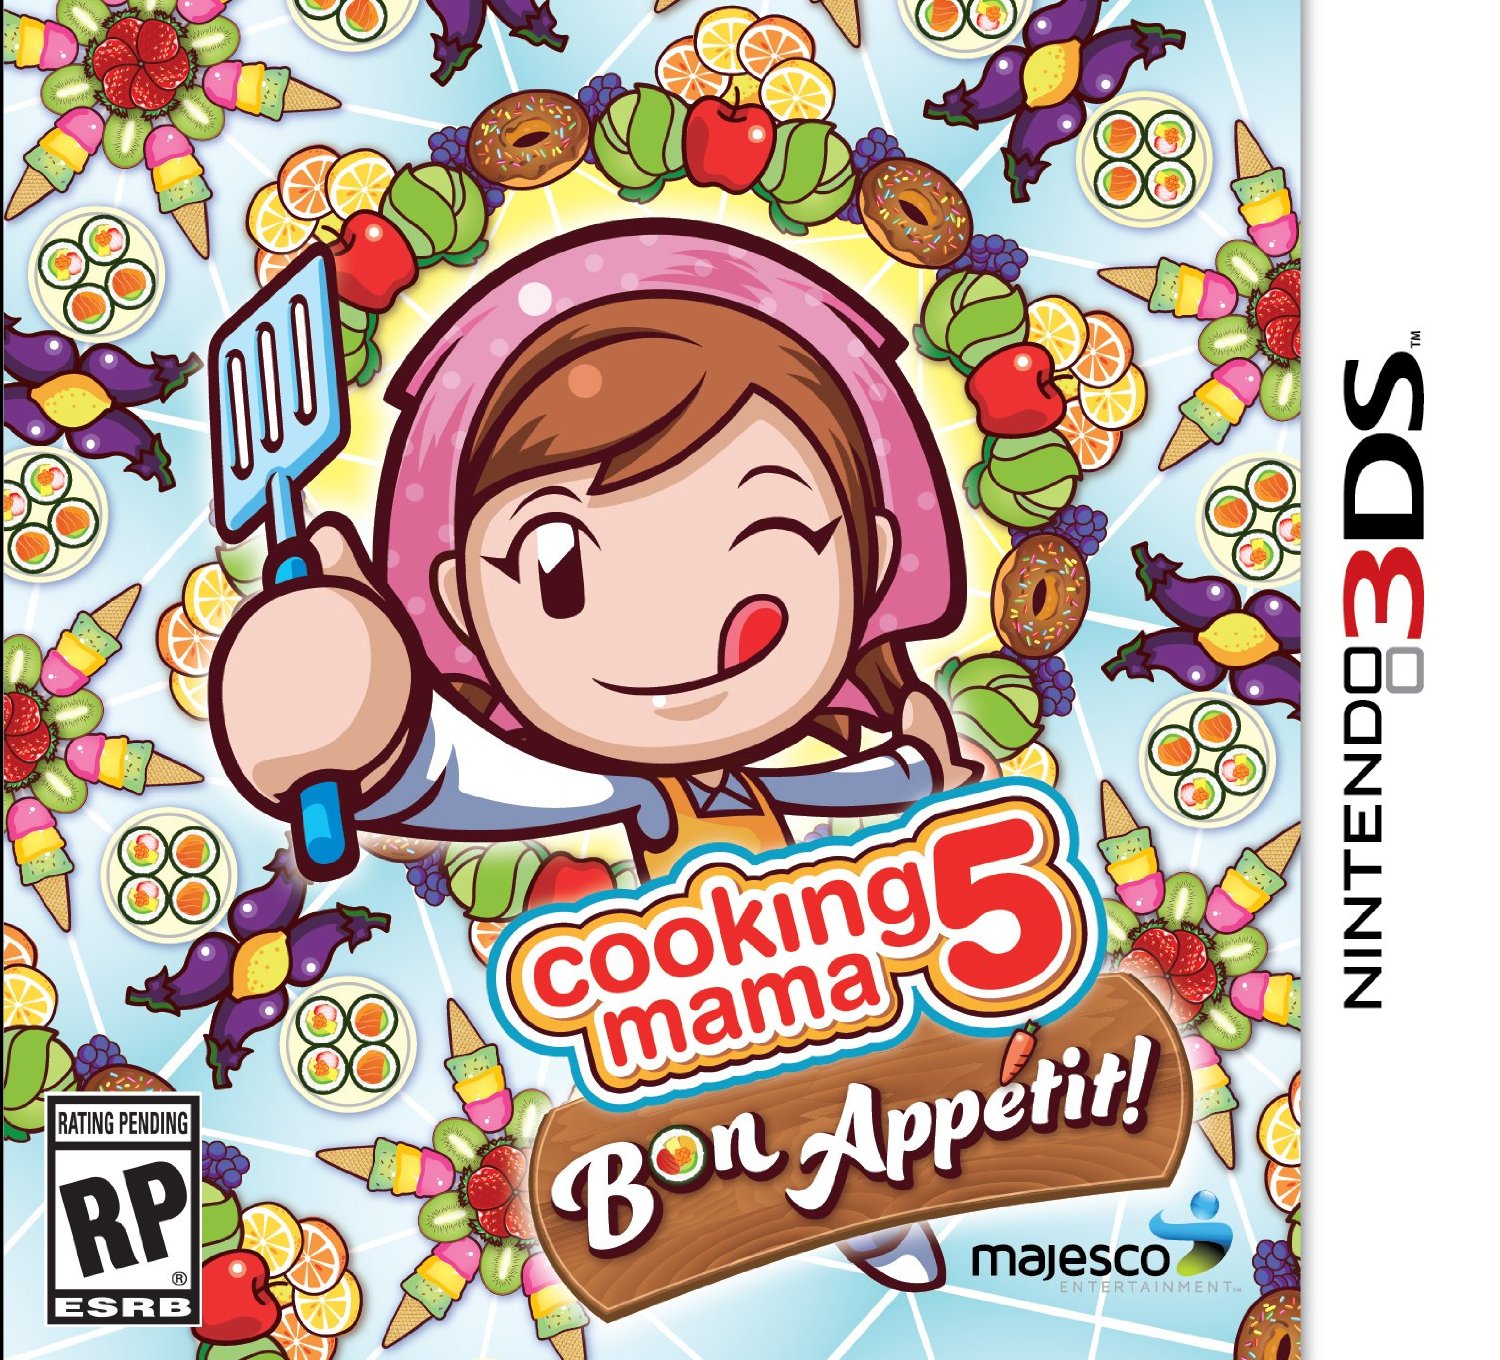 jaquette du jeu vidéo Cooking mama 5 : Bon Appétit